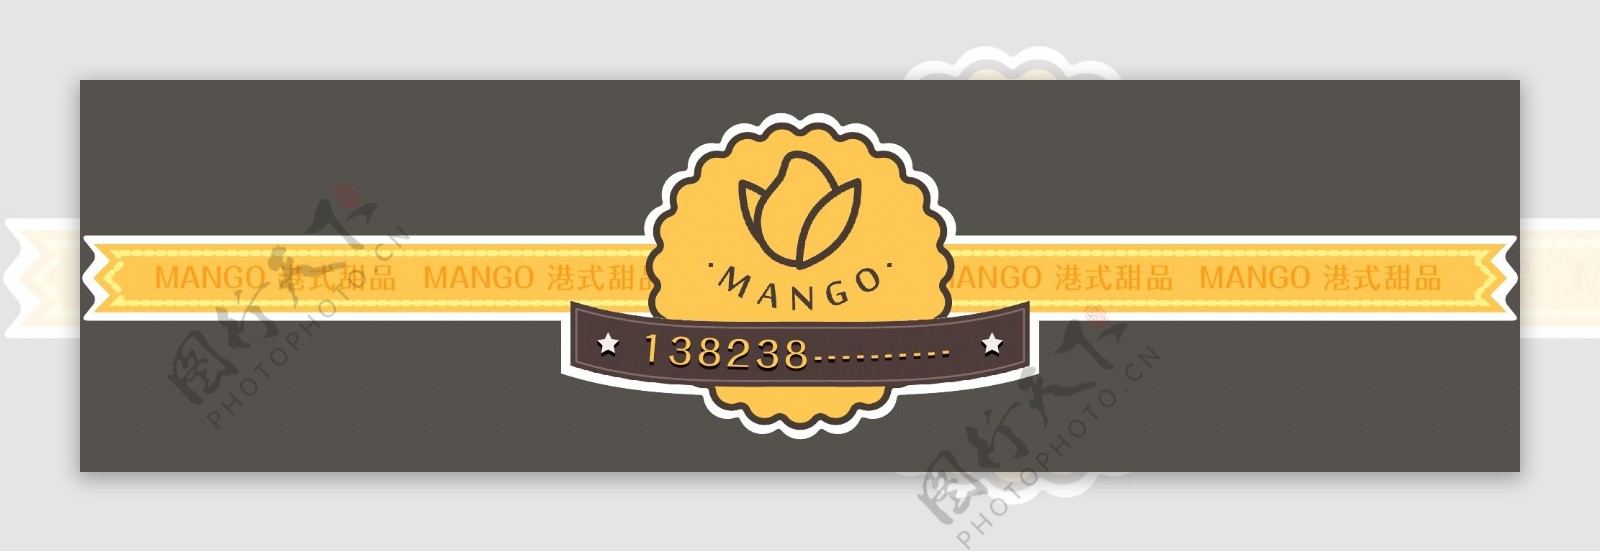 mango港式甜品封条贴纸